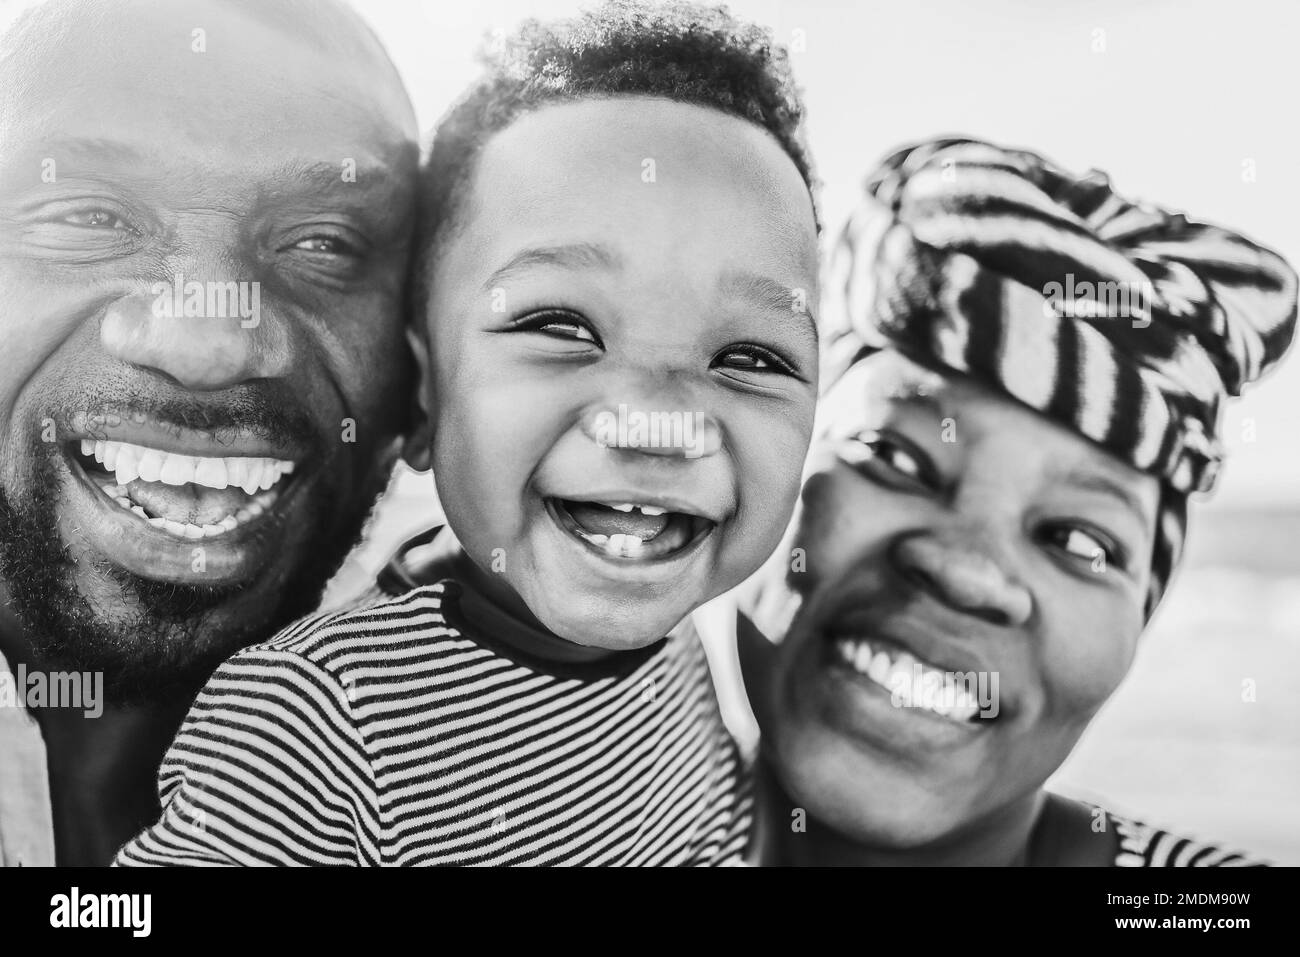 Familia africana divirtiéndose al aire libre - Enfoque principal en ojos de bebé - Edición en blanco y negro Foto de stock